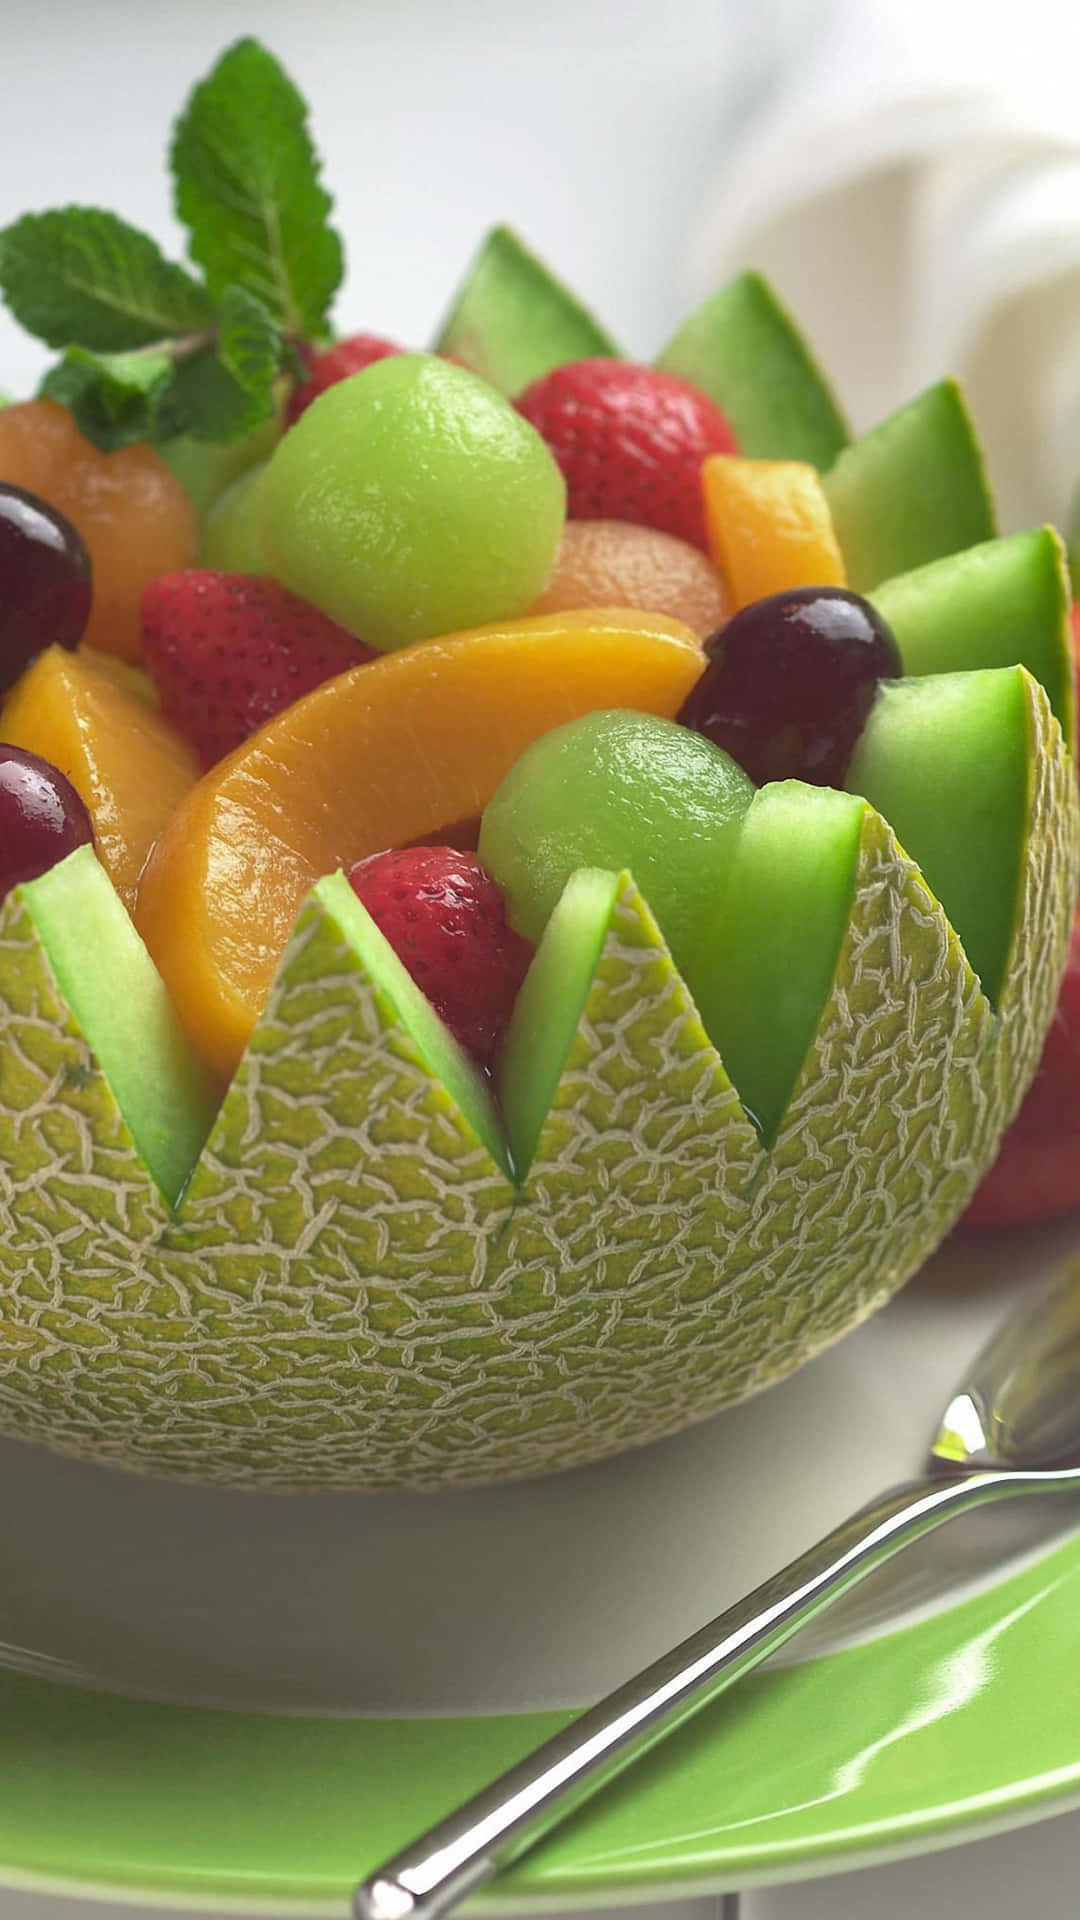 Cute Food Iphone Fruit Bowl Wallpaper